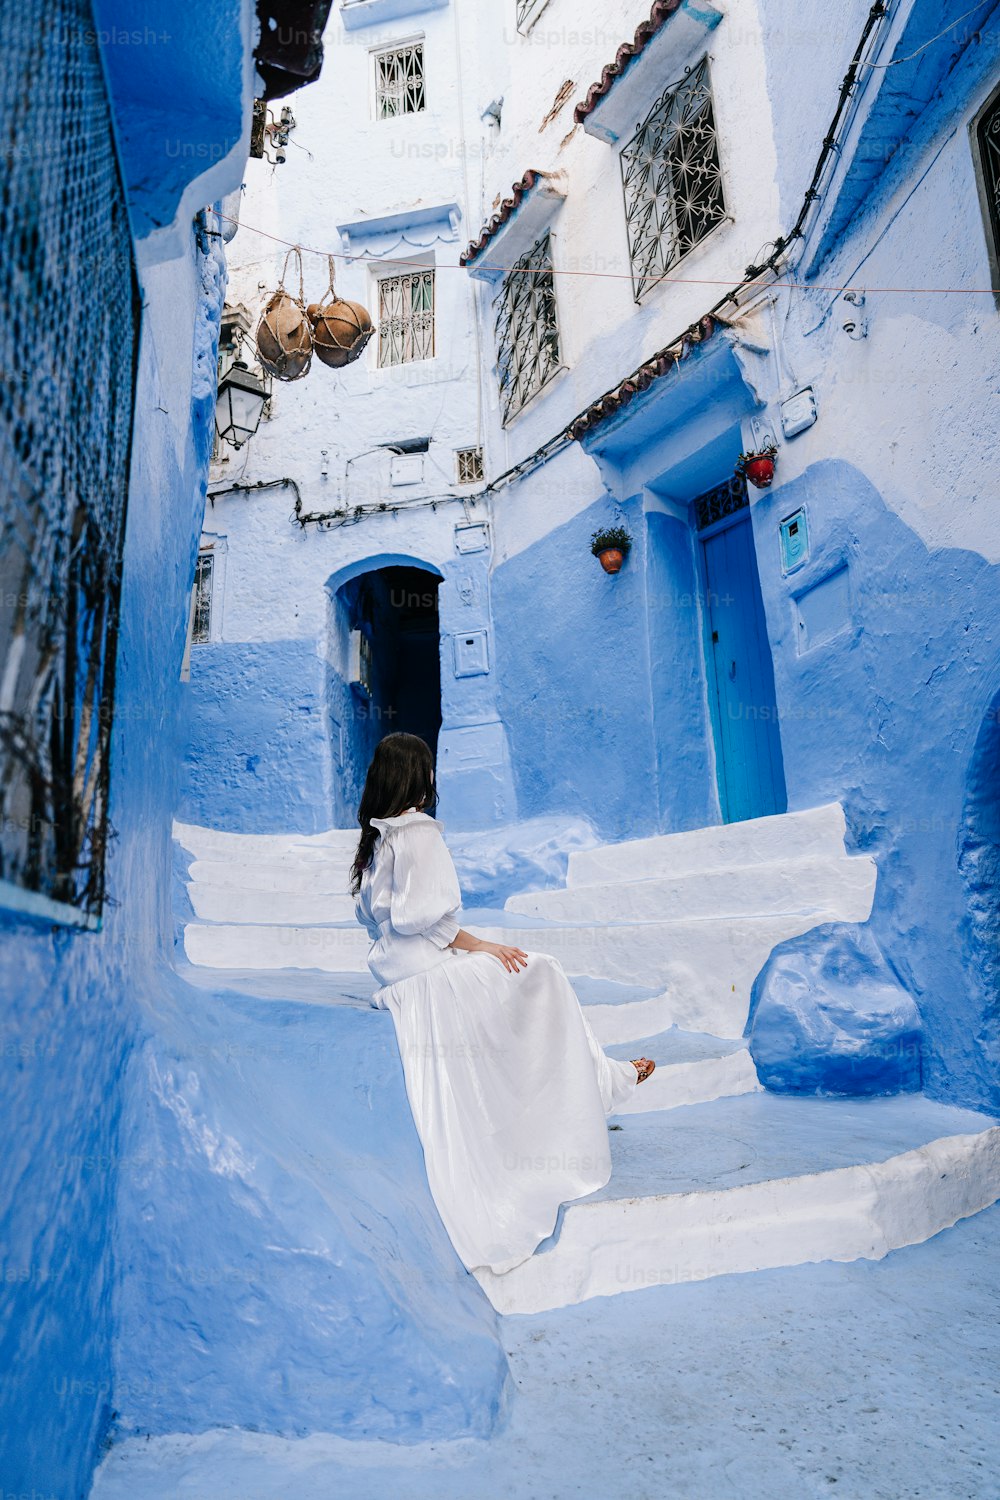 흰 드레스를 입은 여성이 계단에 앉아 있다